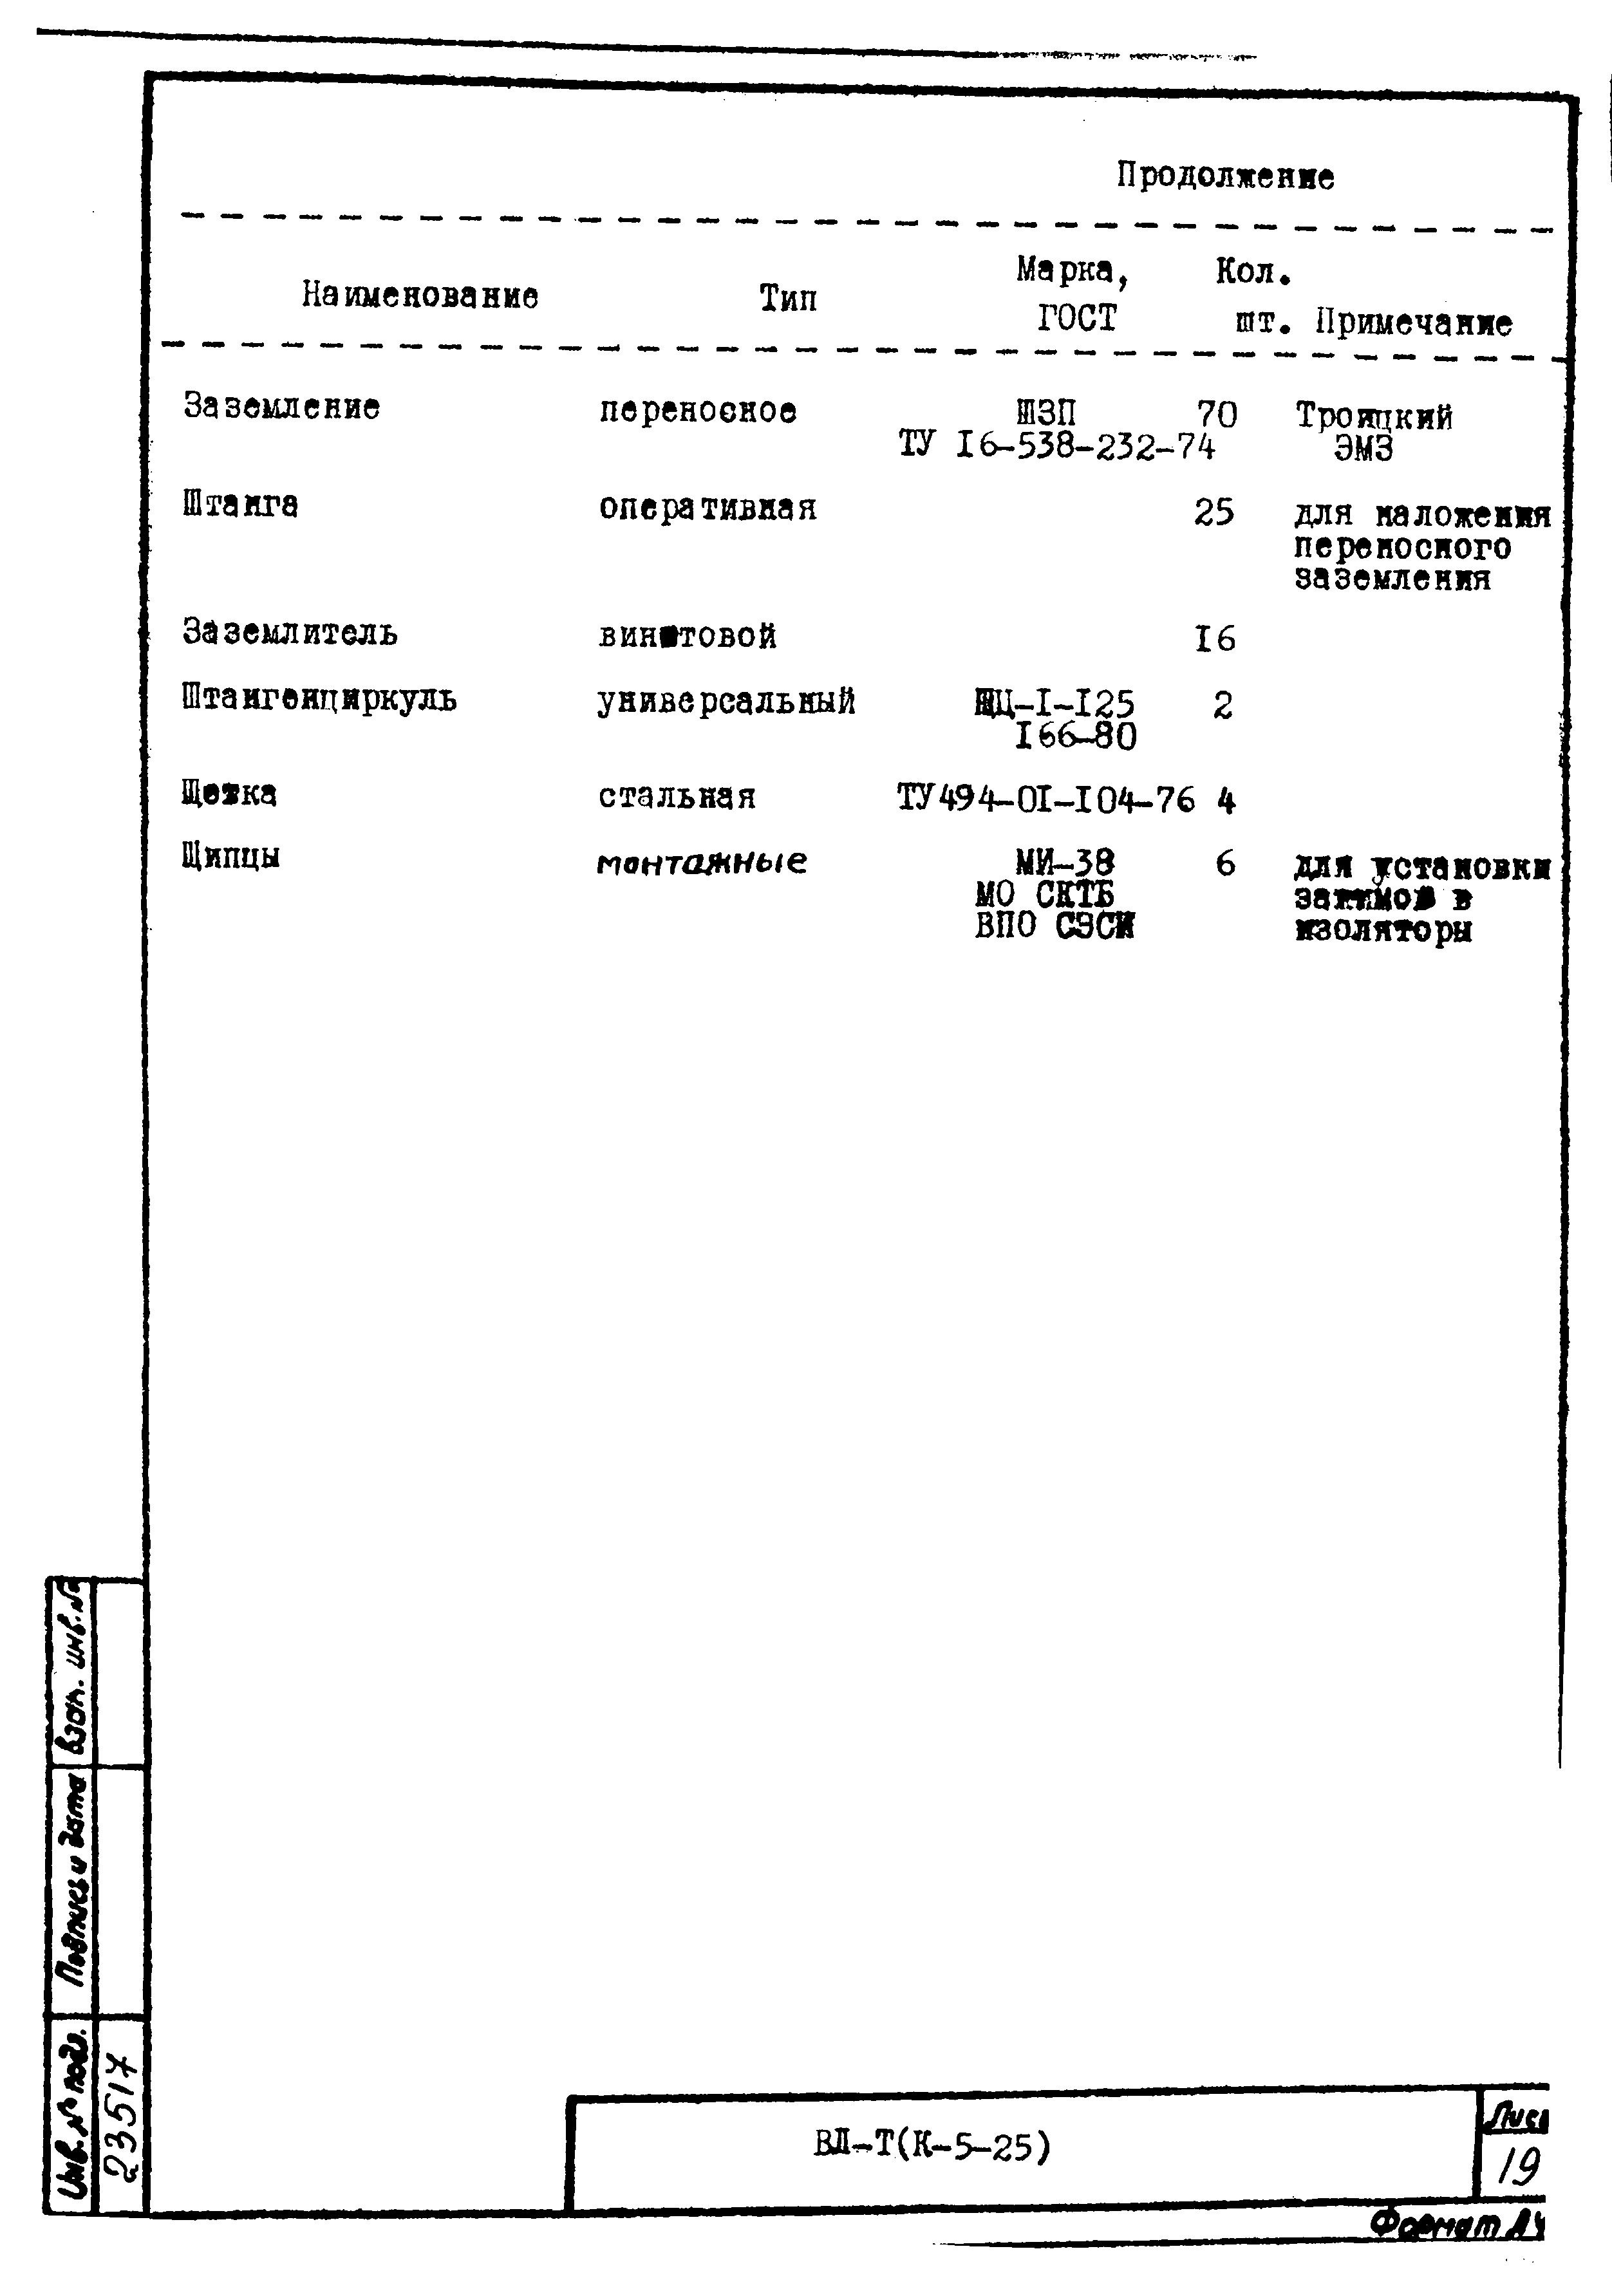 Технологическая карта К-5-25-30